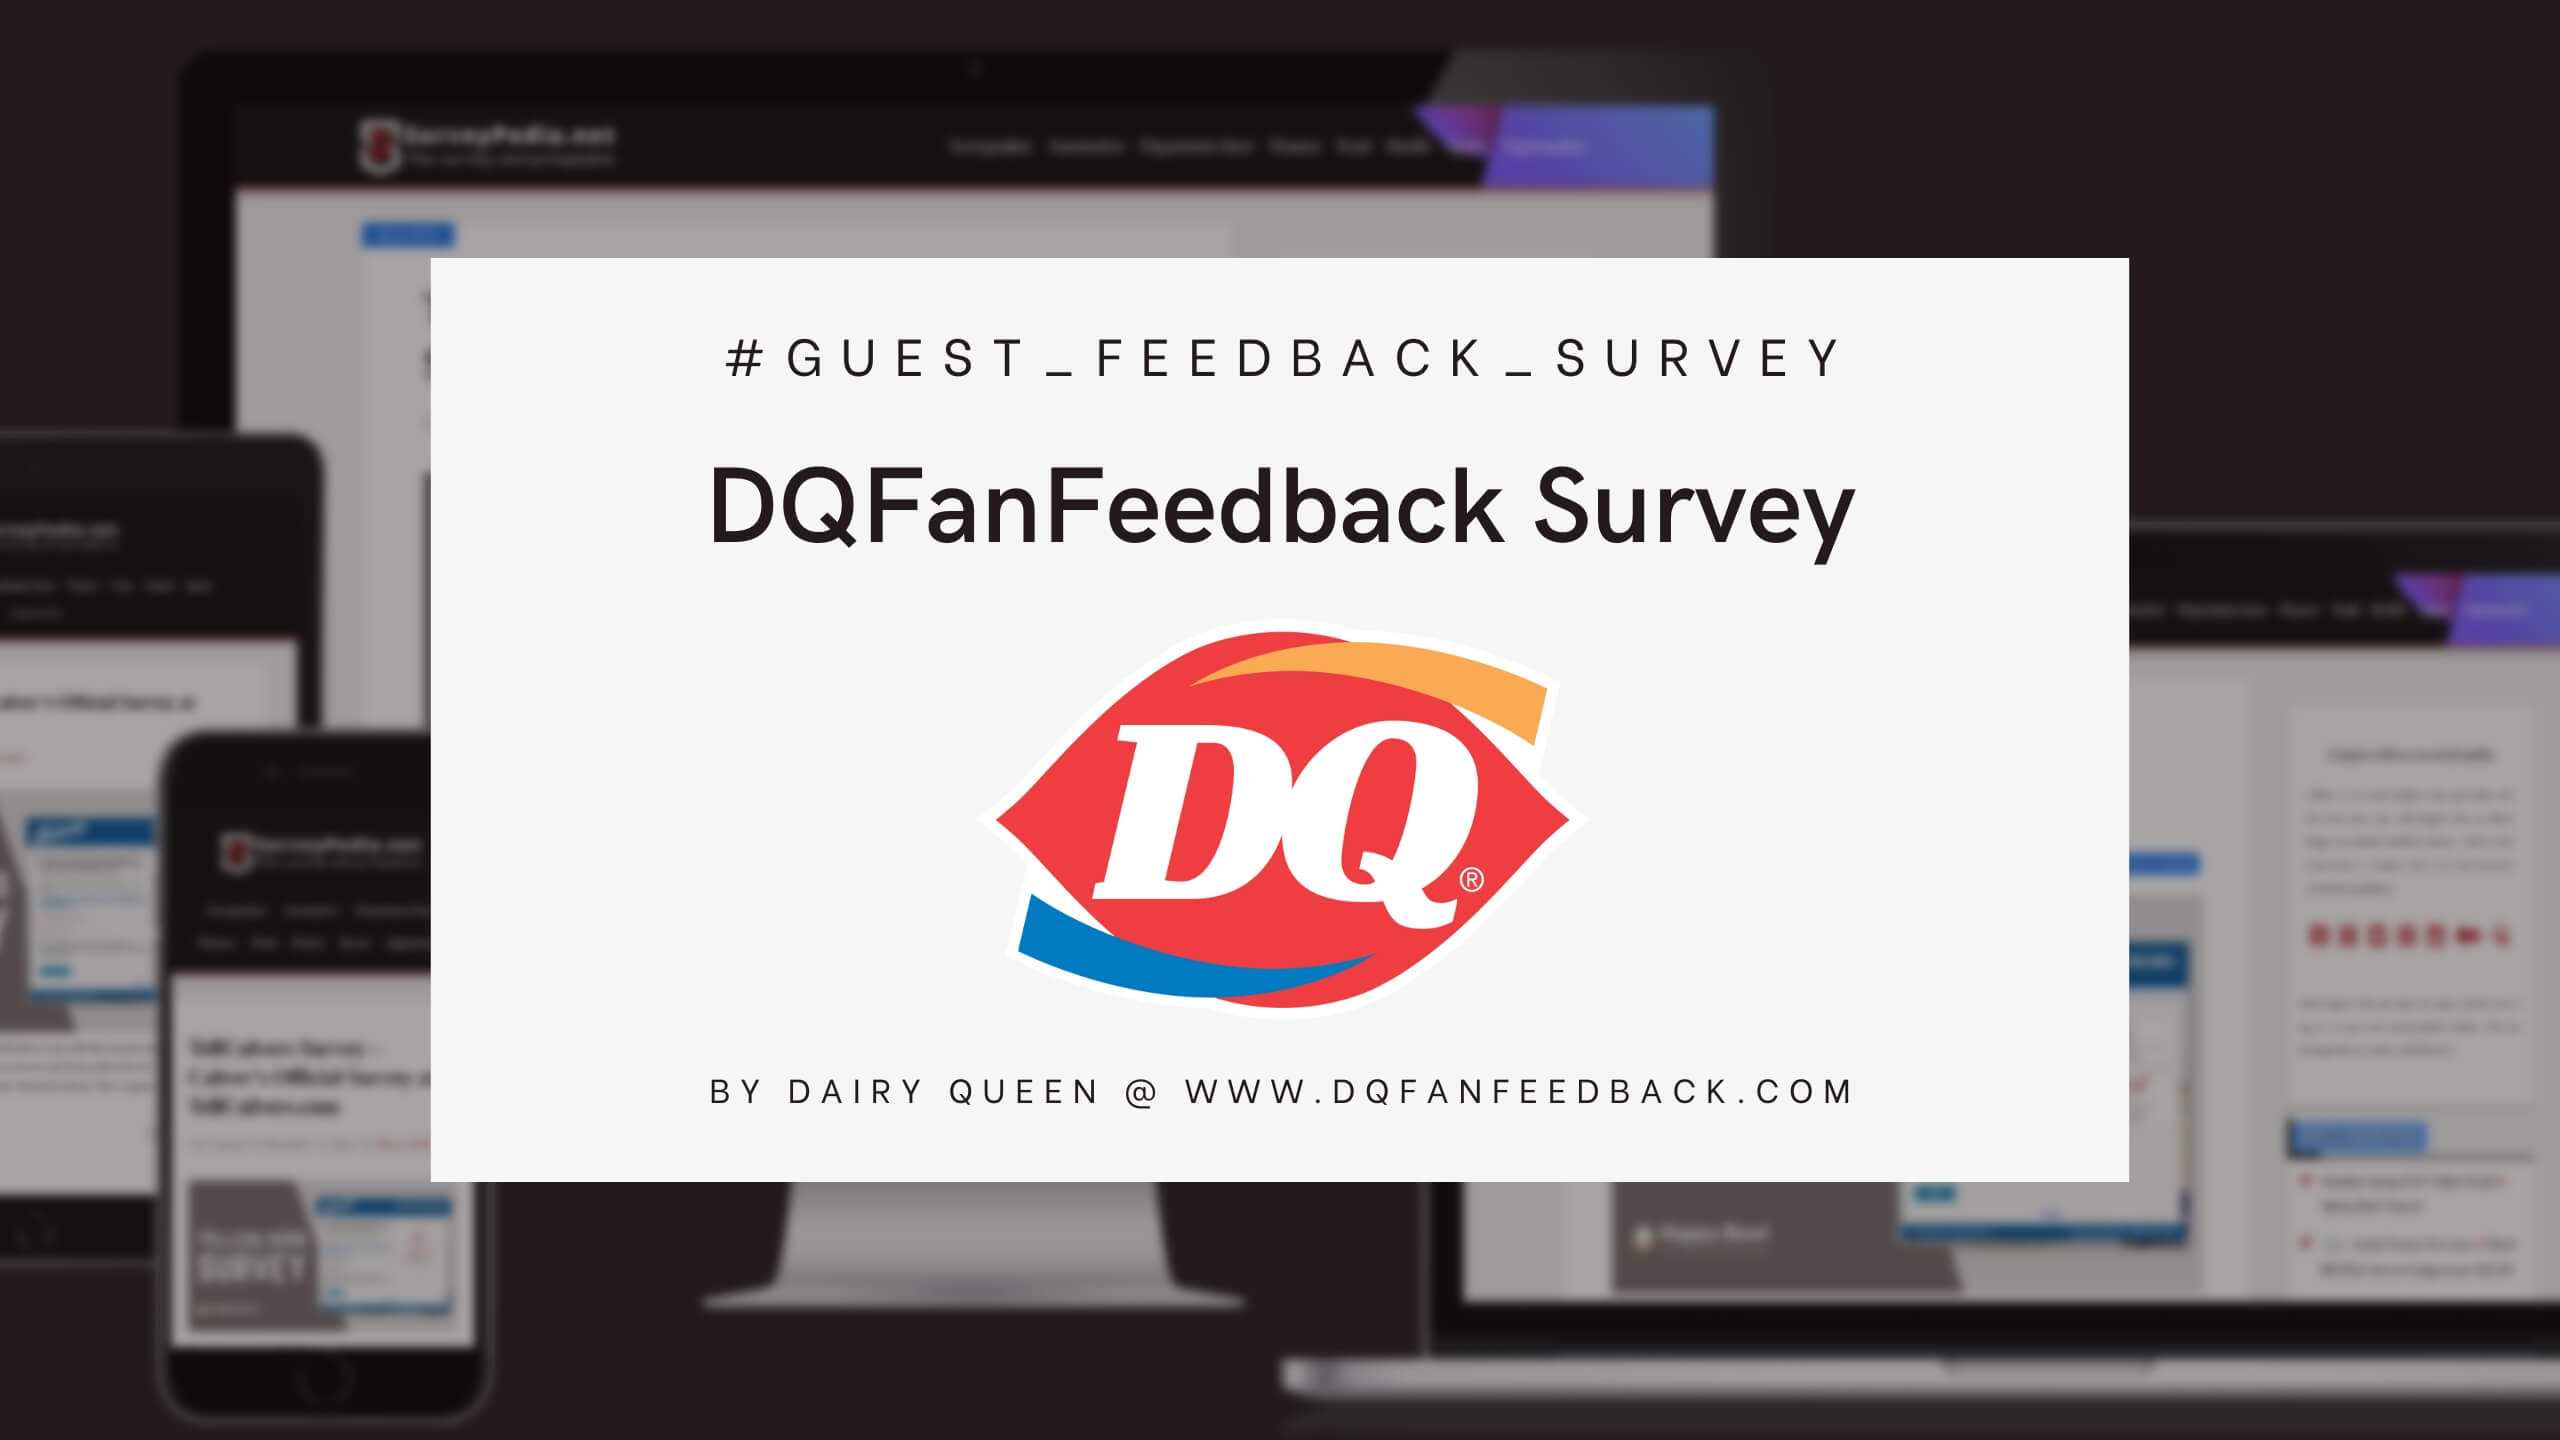 DQFanFeedback Survey Survey: Dairy Queen Official Customer Feedback Survey at www.dqfanfeedback.com